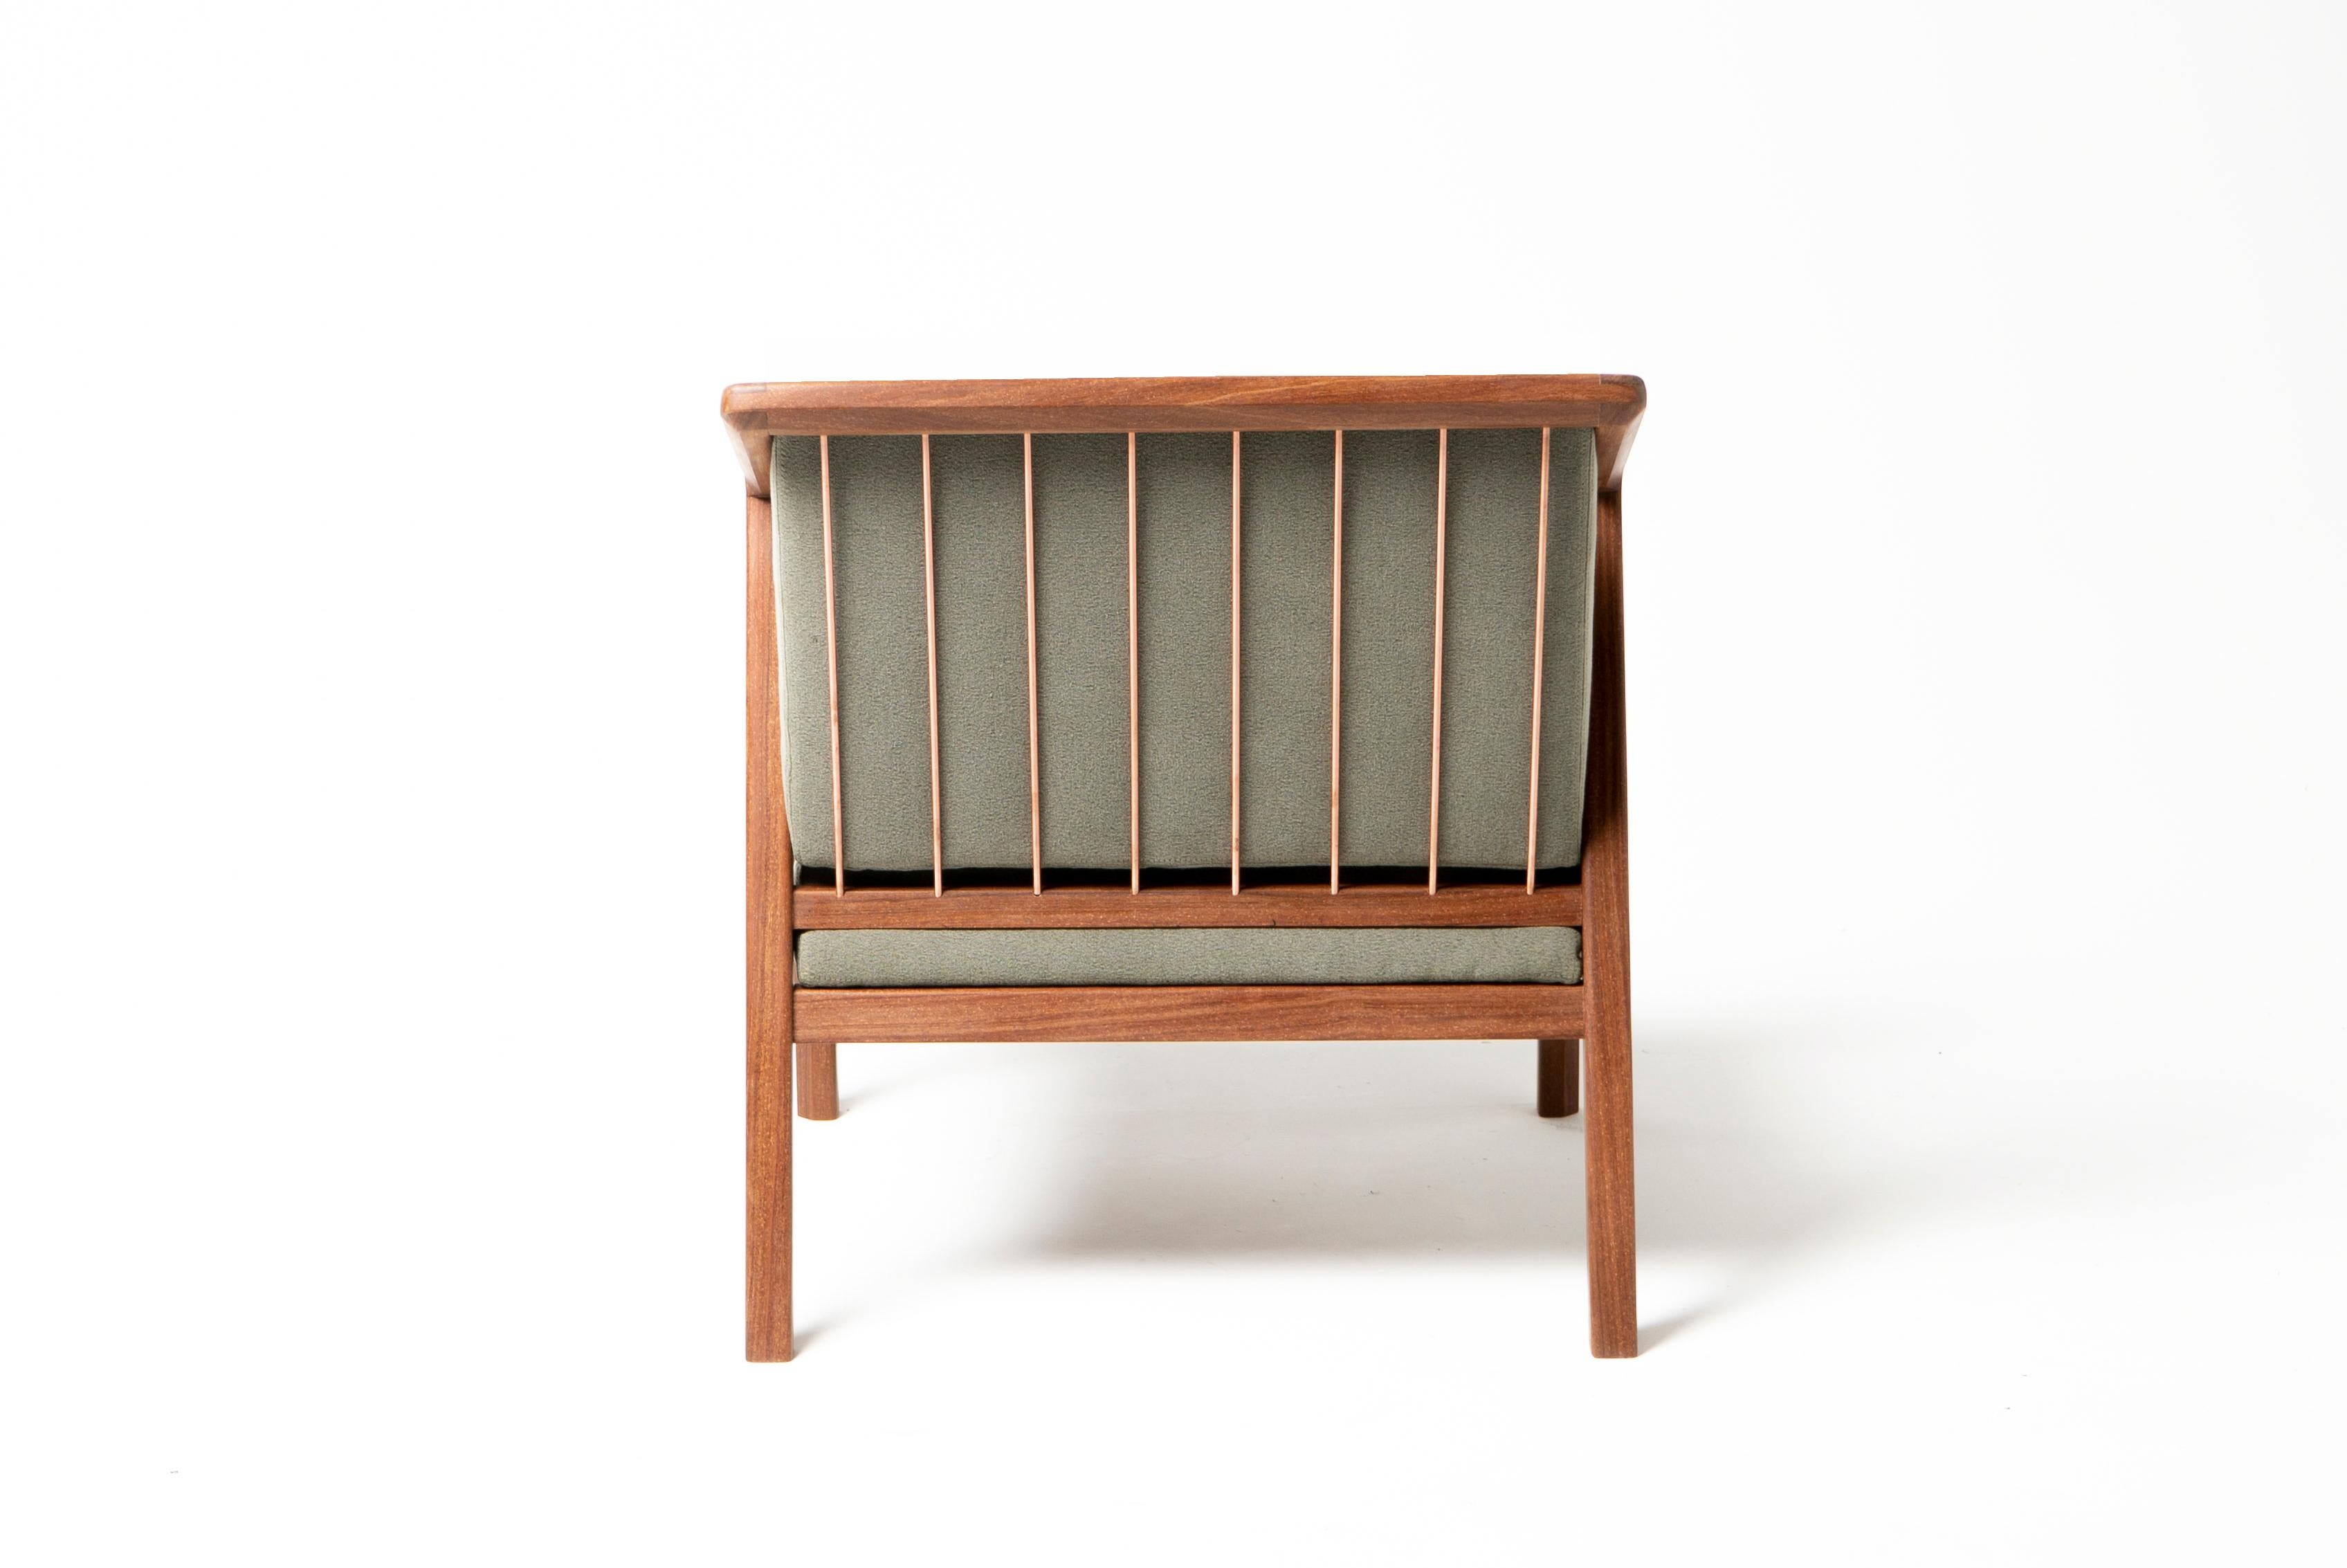 Ein minimalistisches Design, das Struktur und Ästhetik vereint. Der Sessel Canela mit seinen modernen und skandinavischen Einflüssen aus der Mitte des Jahrhunderts ist eine elegante Ergänzung für jedes Ambiente, sei es ein Wohnzimmer, ein